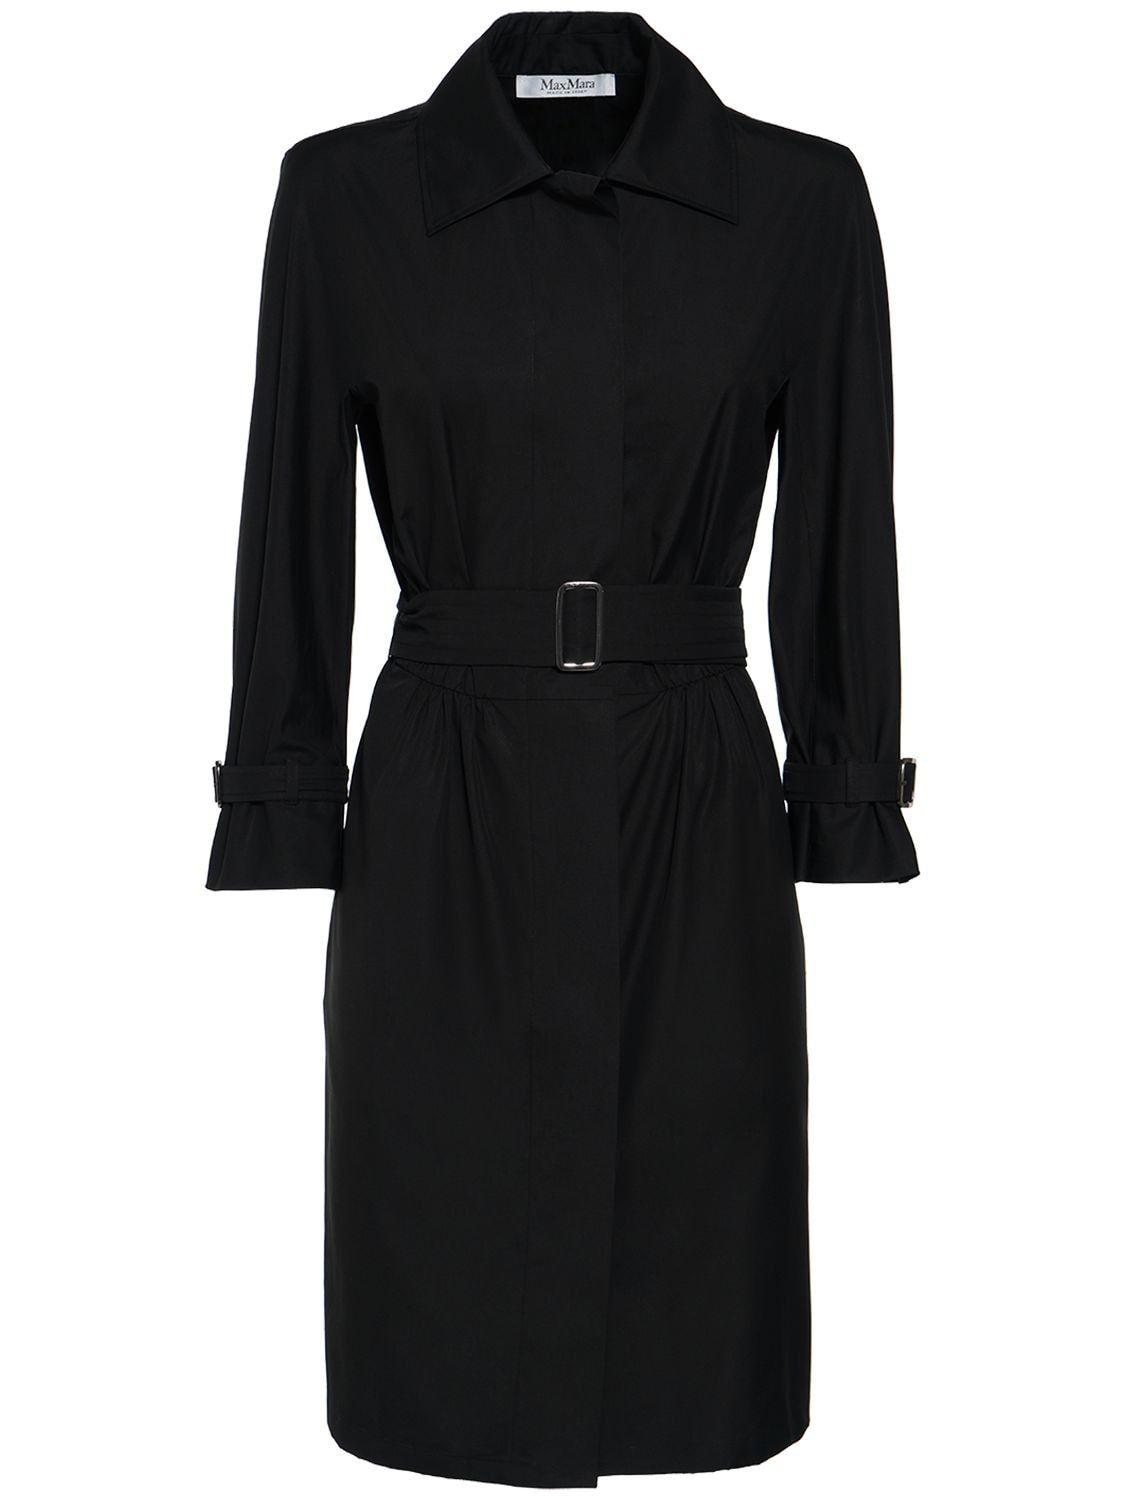 Max Mara Saio Belted Cotton Poplin Midi Dress in Black | Lyst